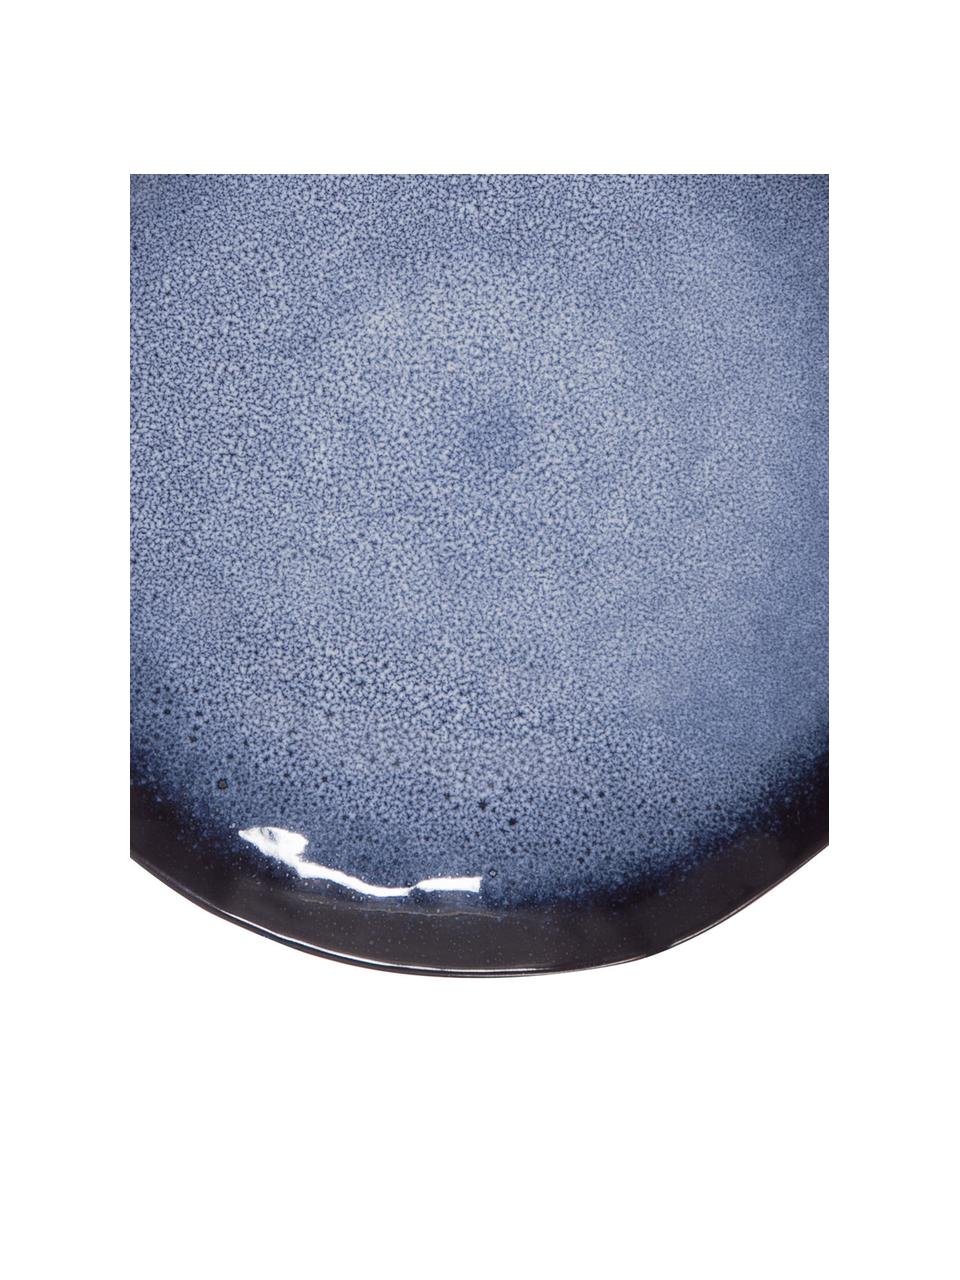 Piatto piano blu con smalto efficace Sapphire 3 pz, Gres, Blu, nero-marrone, Ø 27 cm